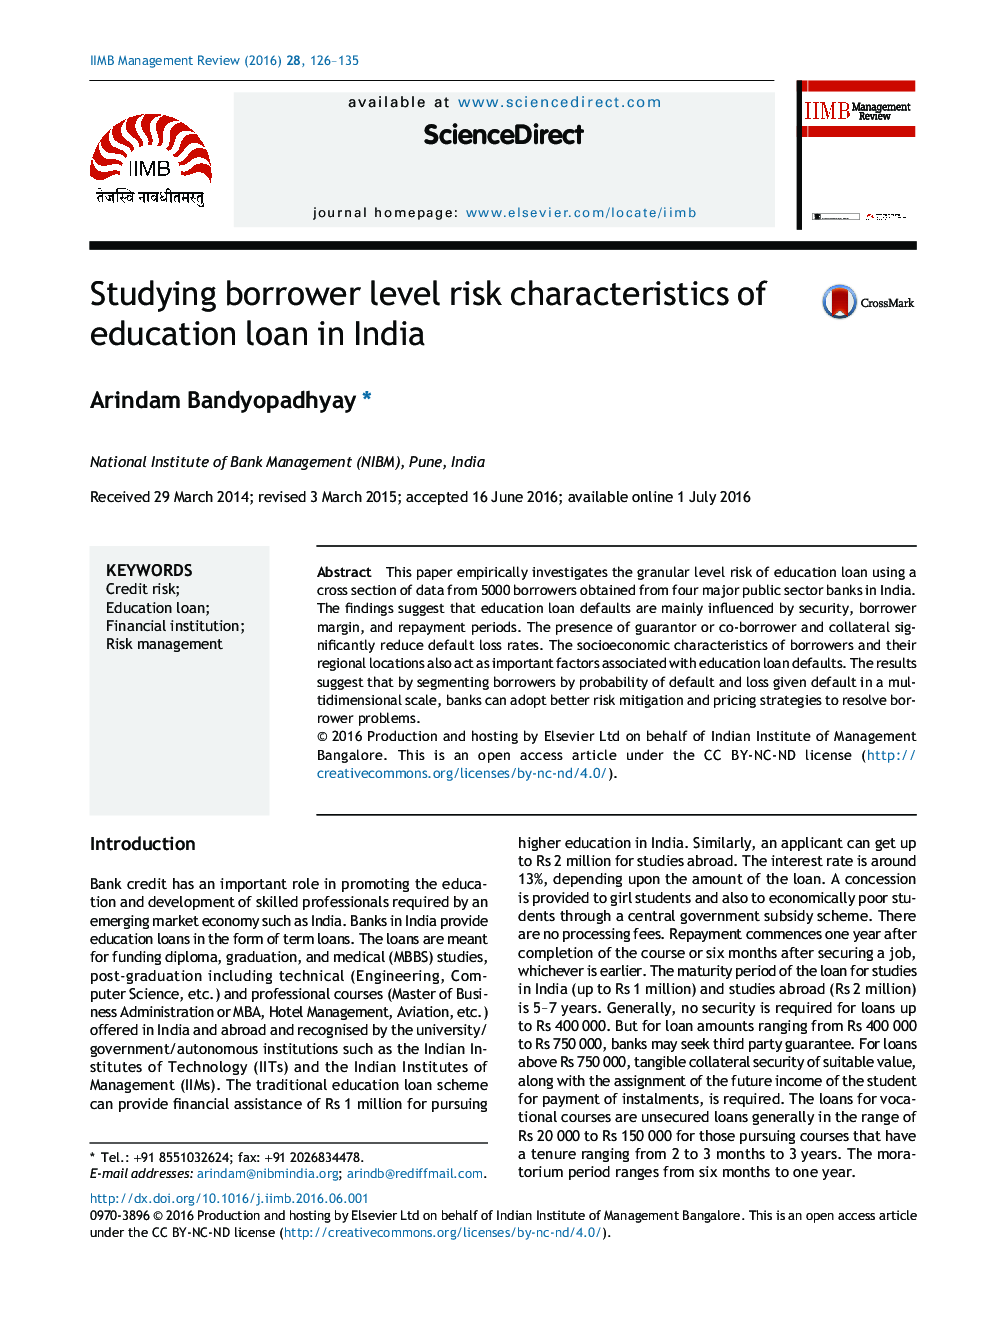 مطالعه ویژگی های ریسک وام گیرنده در مورد وام تحصیلی در هند 